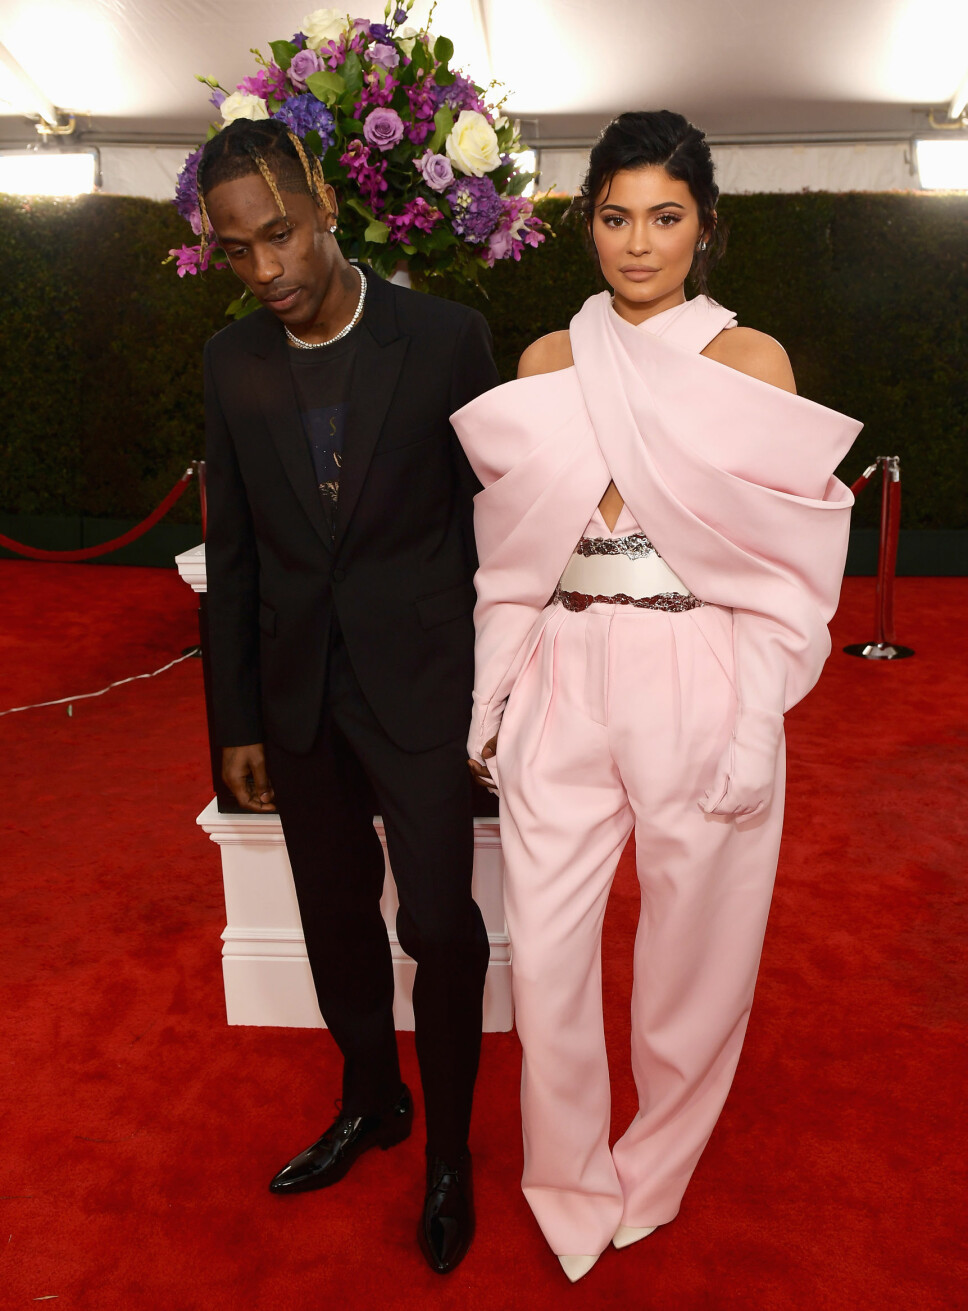 SPESIELT ANTREKK: Kylie Jenner og Travis Scott på den røde løperen under Grammy-utdelingen. Kylie Jenners buksedress har i ettertid blitt slaktet i flere medier som et av kveldens dårligste antrekk. Det kan også legges til at paret kom for sent for selve pressedekningen, og at dette er grunnen til at det ikke er noen andre rundt dem på bildet.